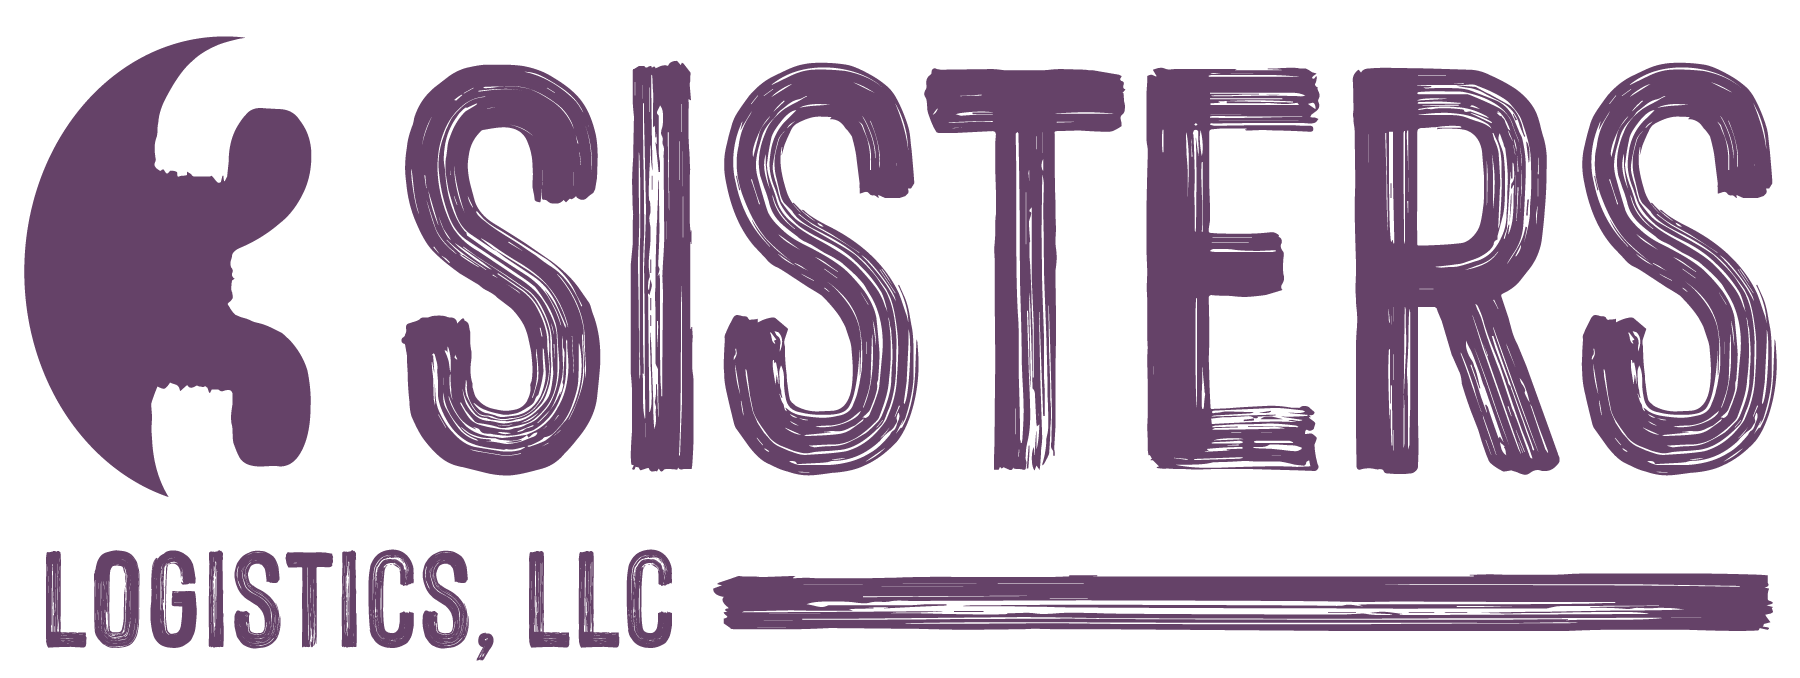 3 Sisters Logistics LLC - Logo